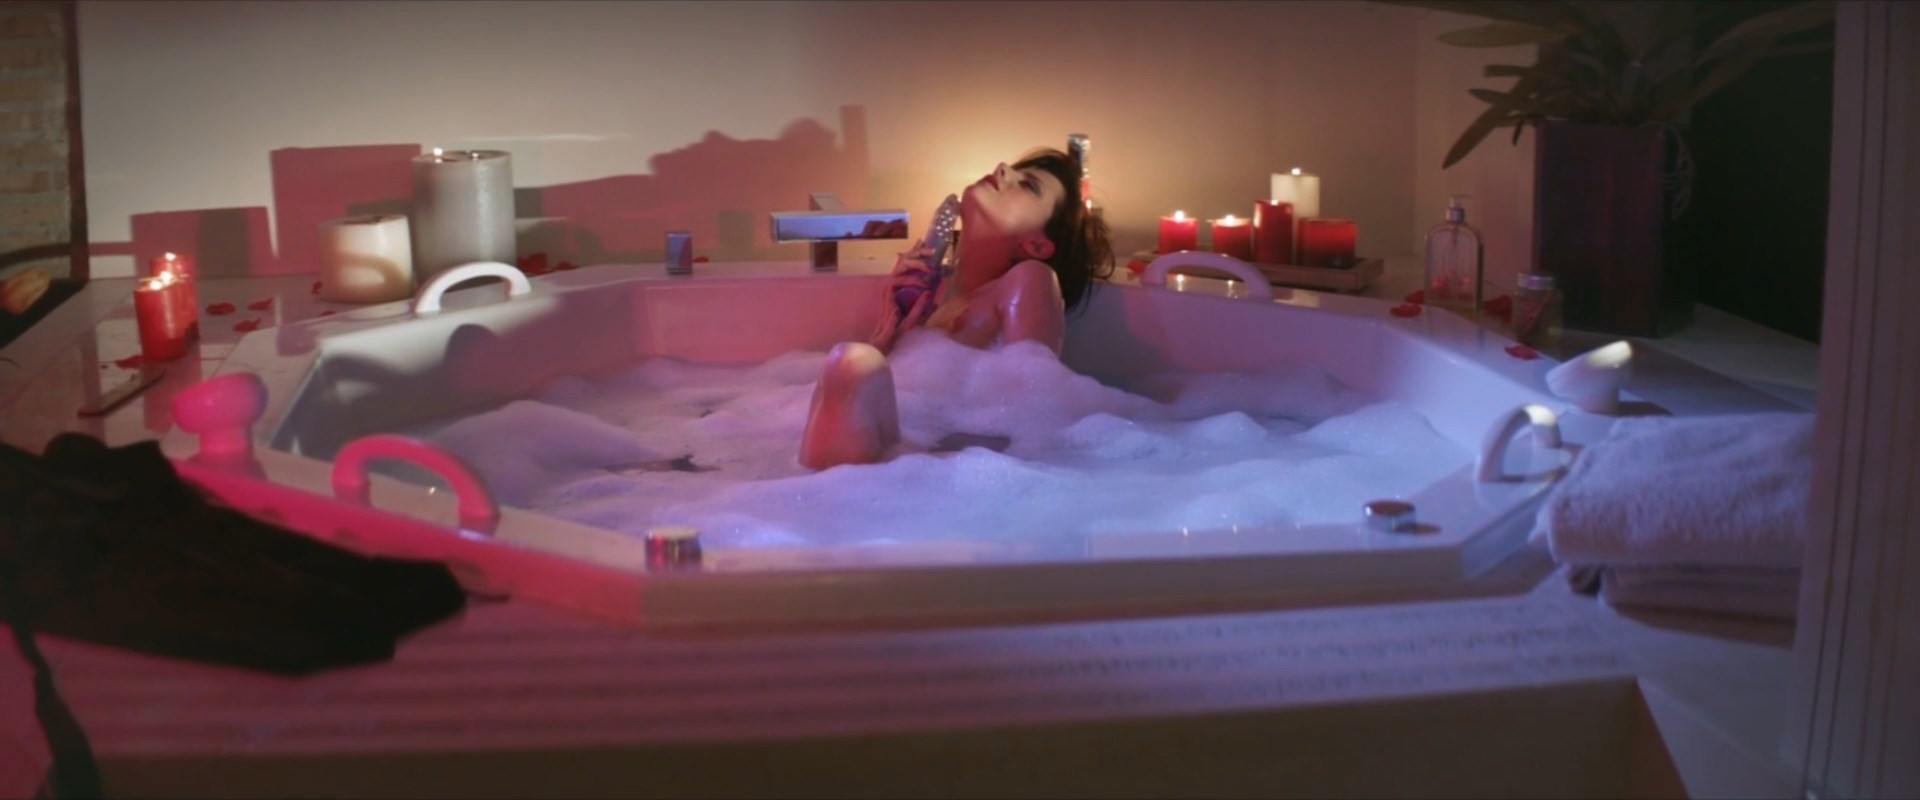 Nude Video Celebs Actress Macarena Gomez